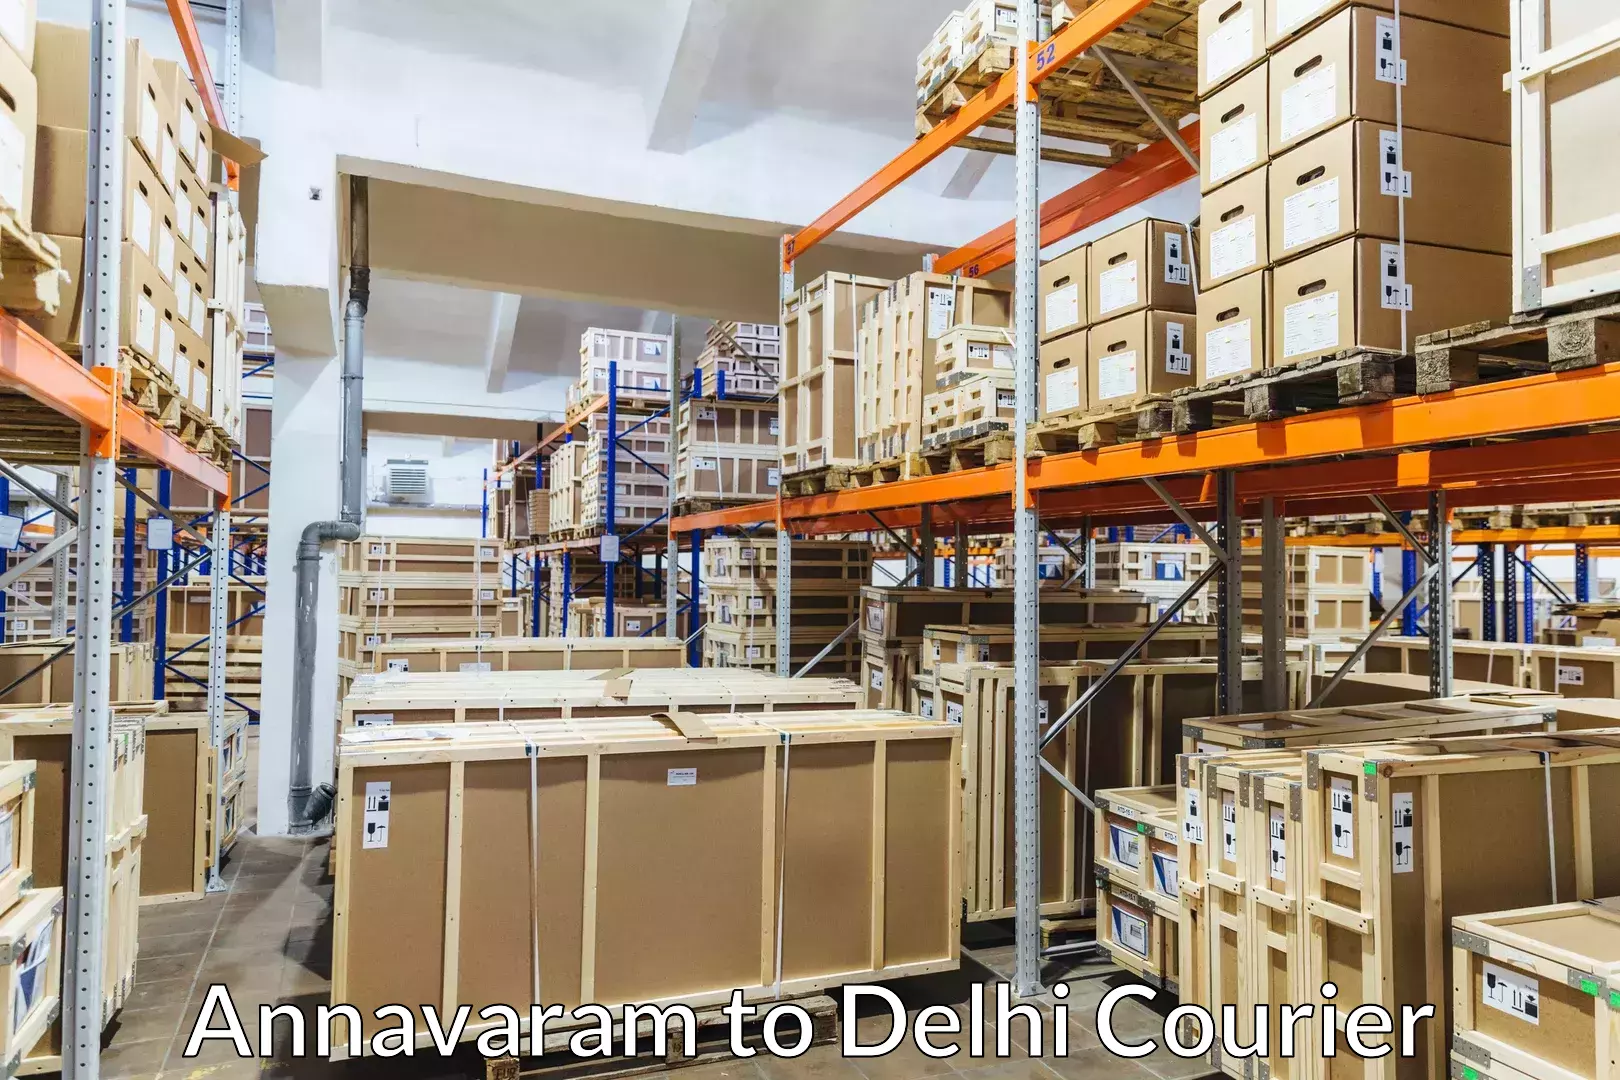 Local furniture movers Annavaram to Delhi